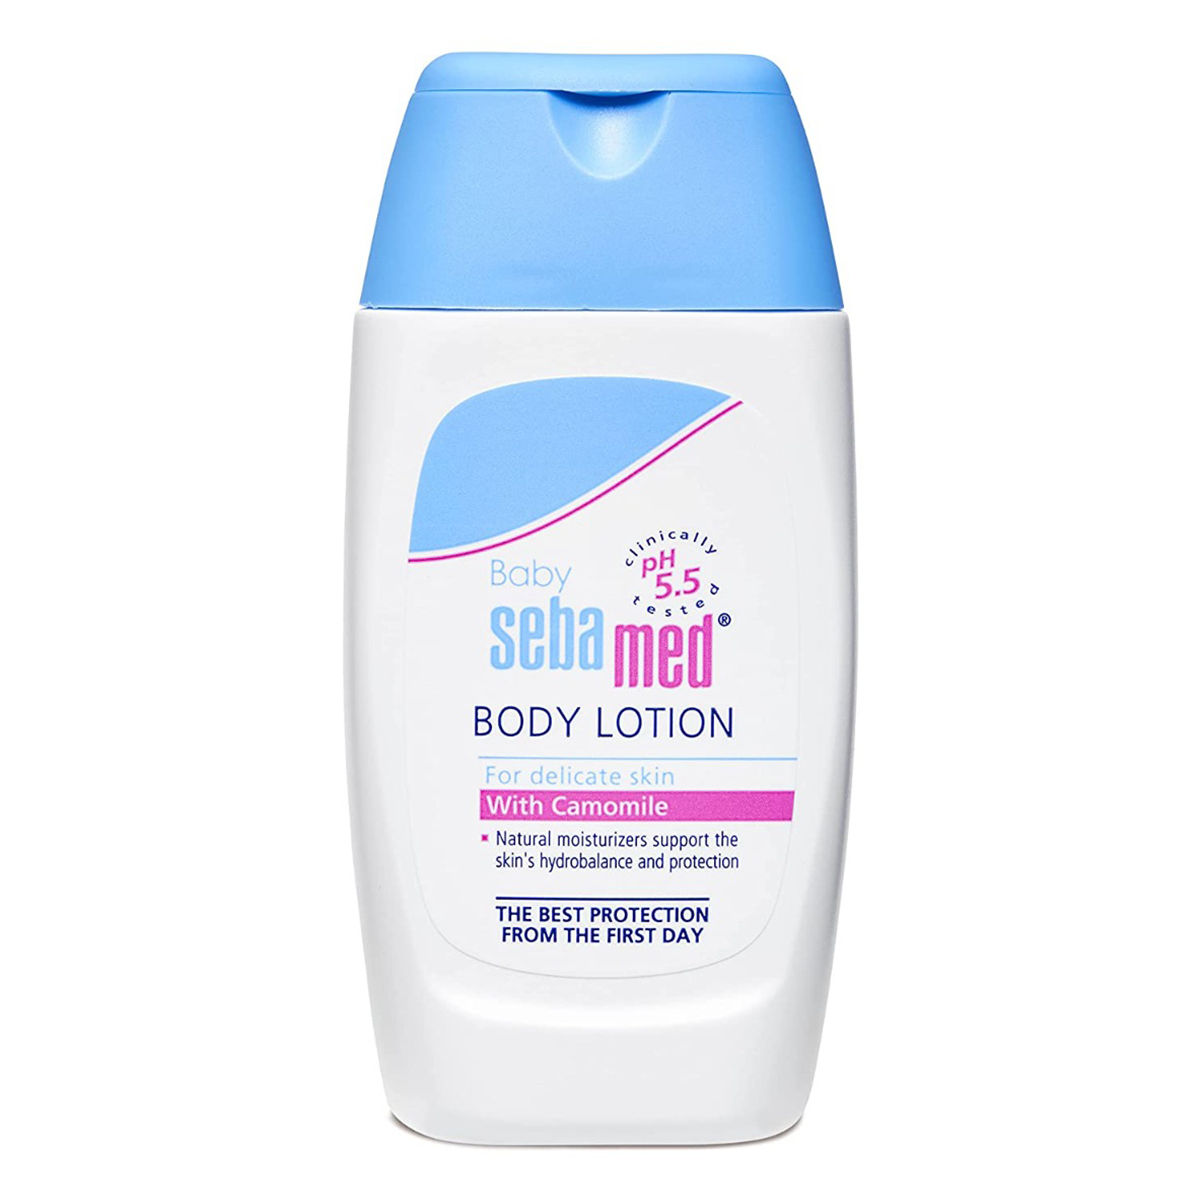 Buy Sebamed Baby Body Lotion, 50 ml Online